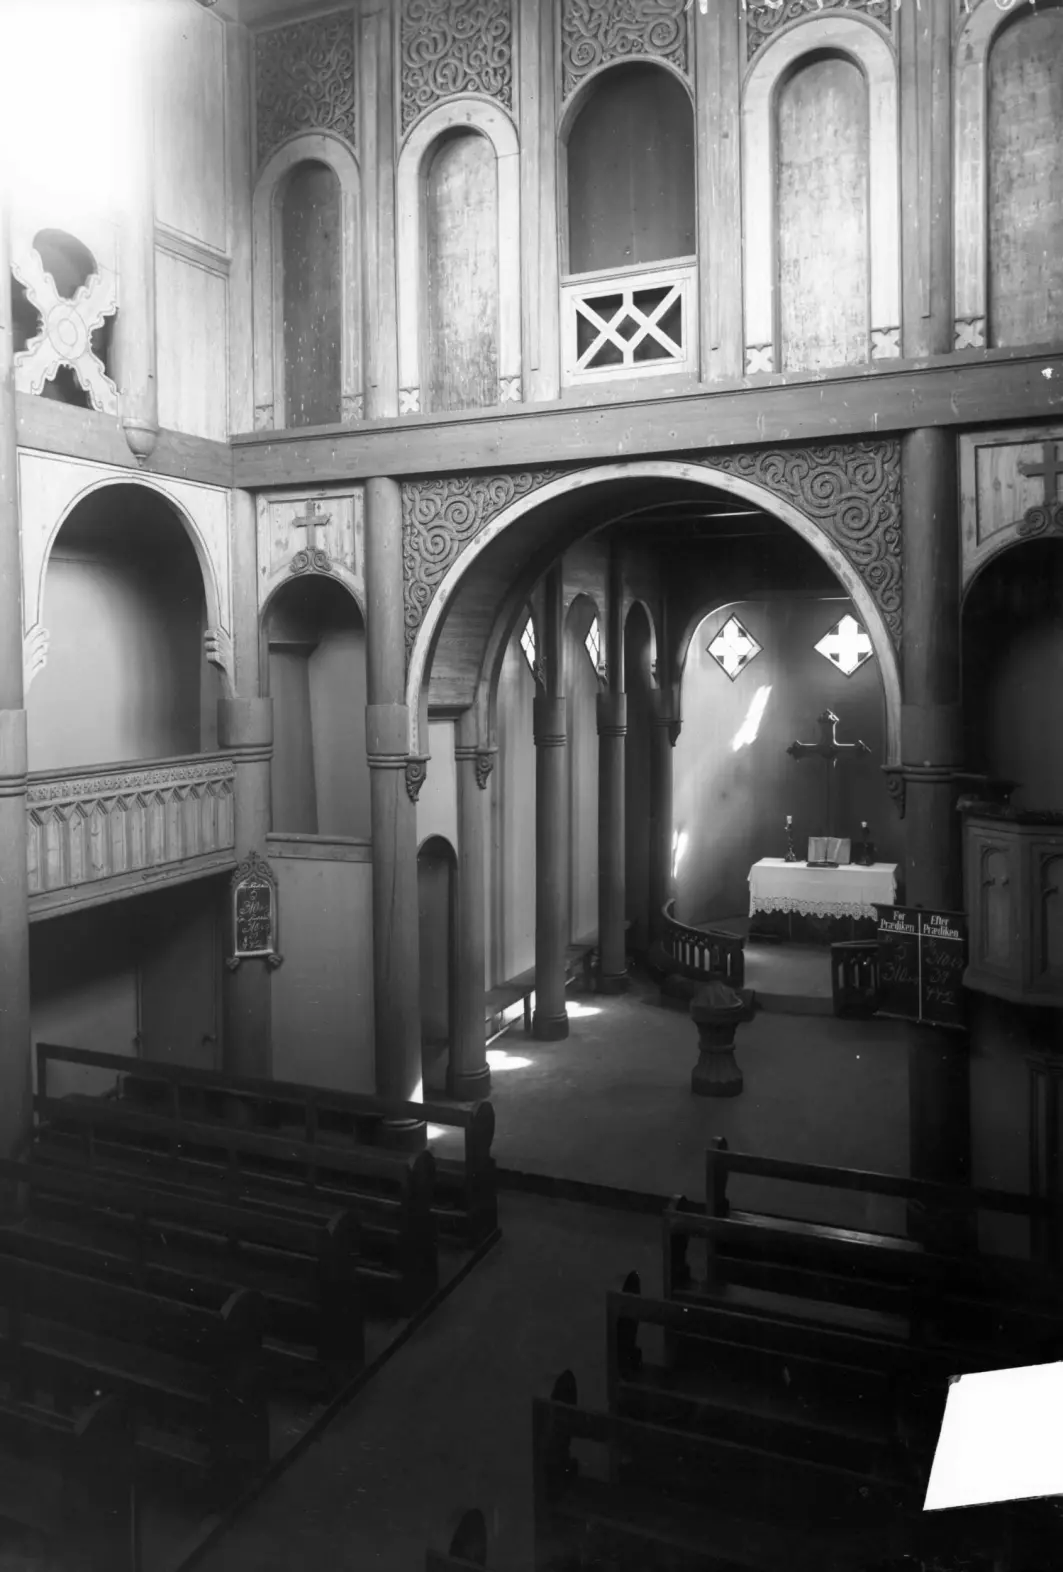 Før restaureringen på 1950-tallet bar Heddal stavkirke preg av å være modernisert. Middelalderen var godt gjemt.